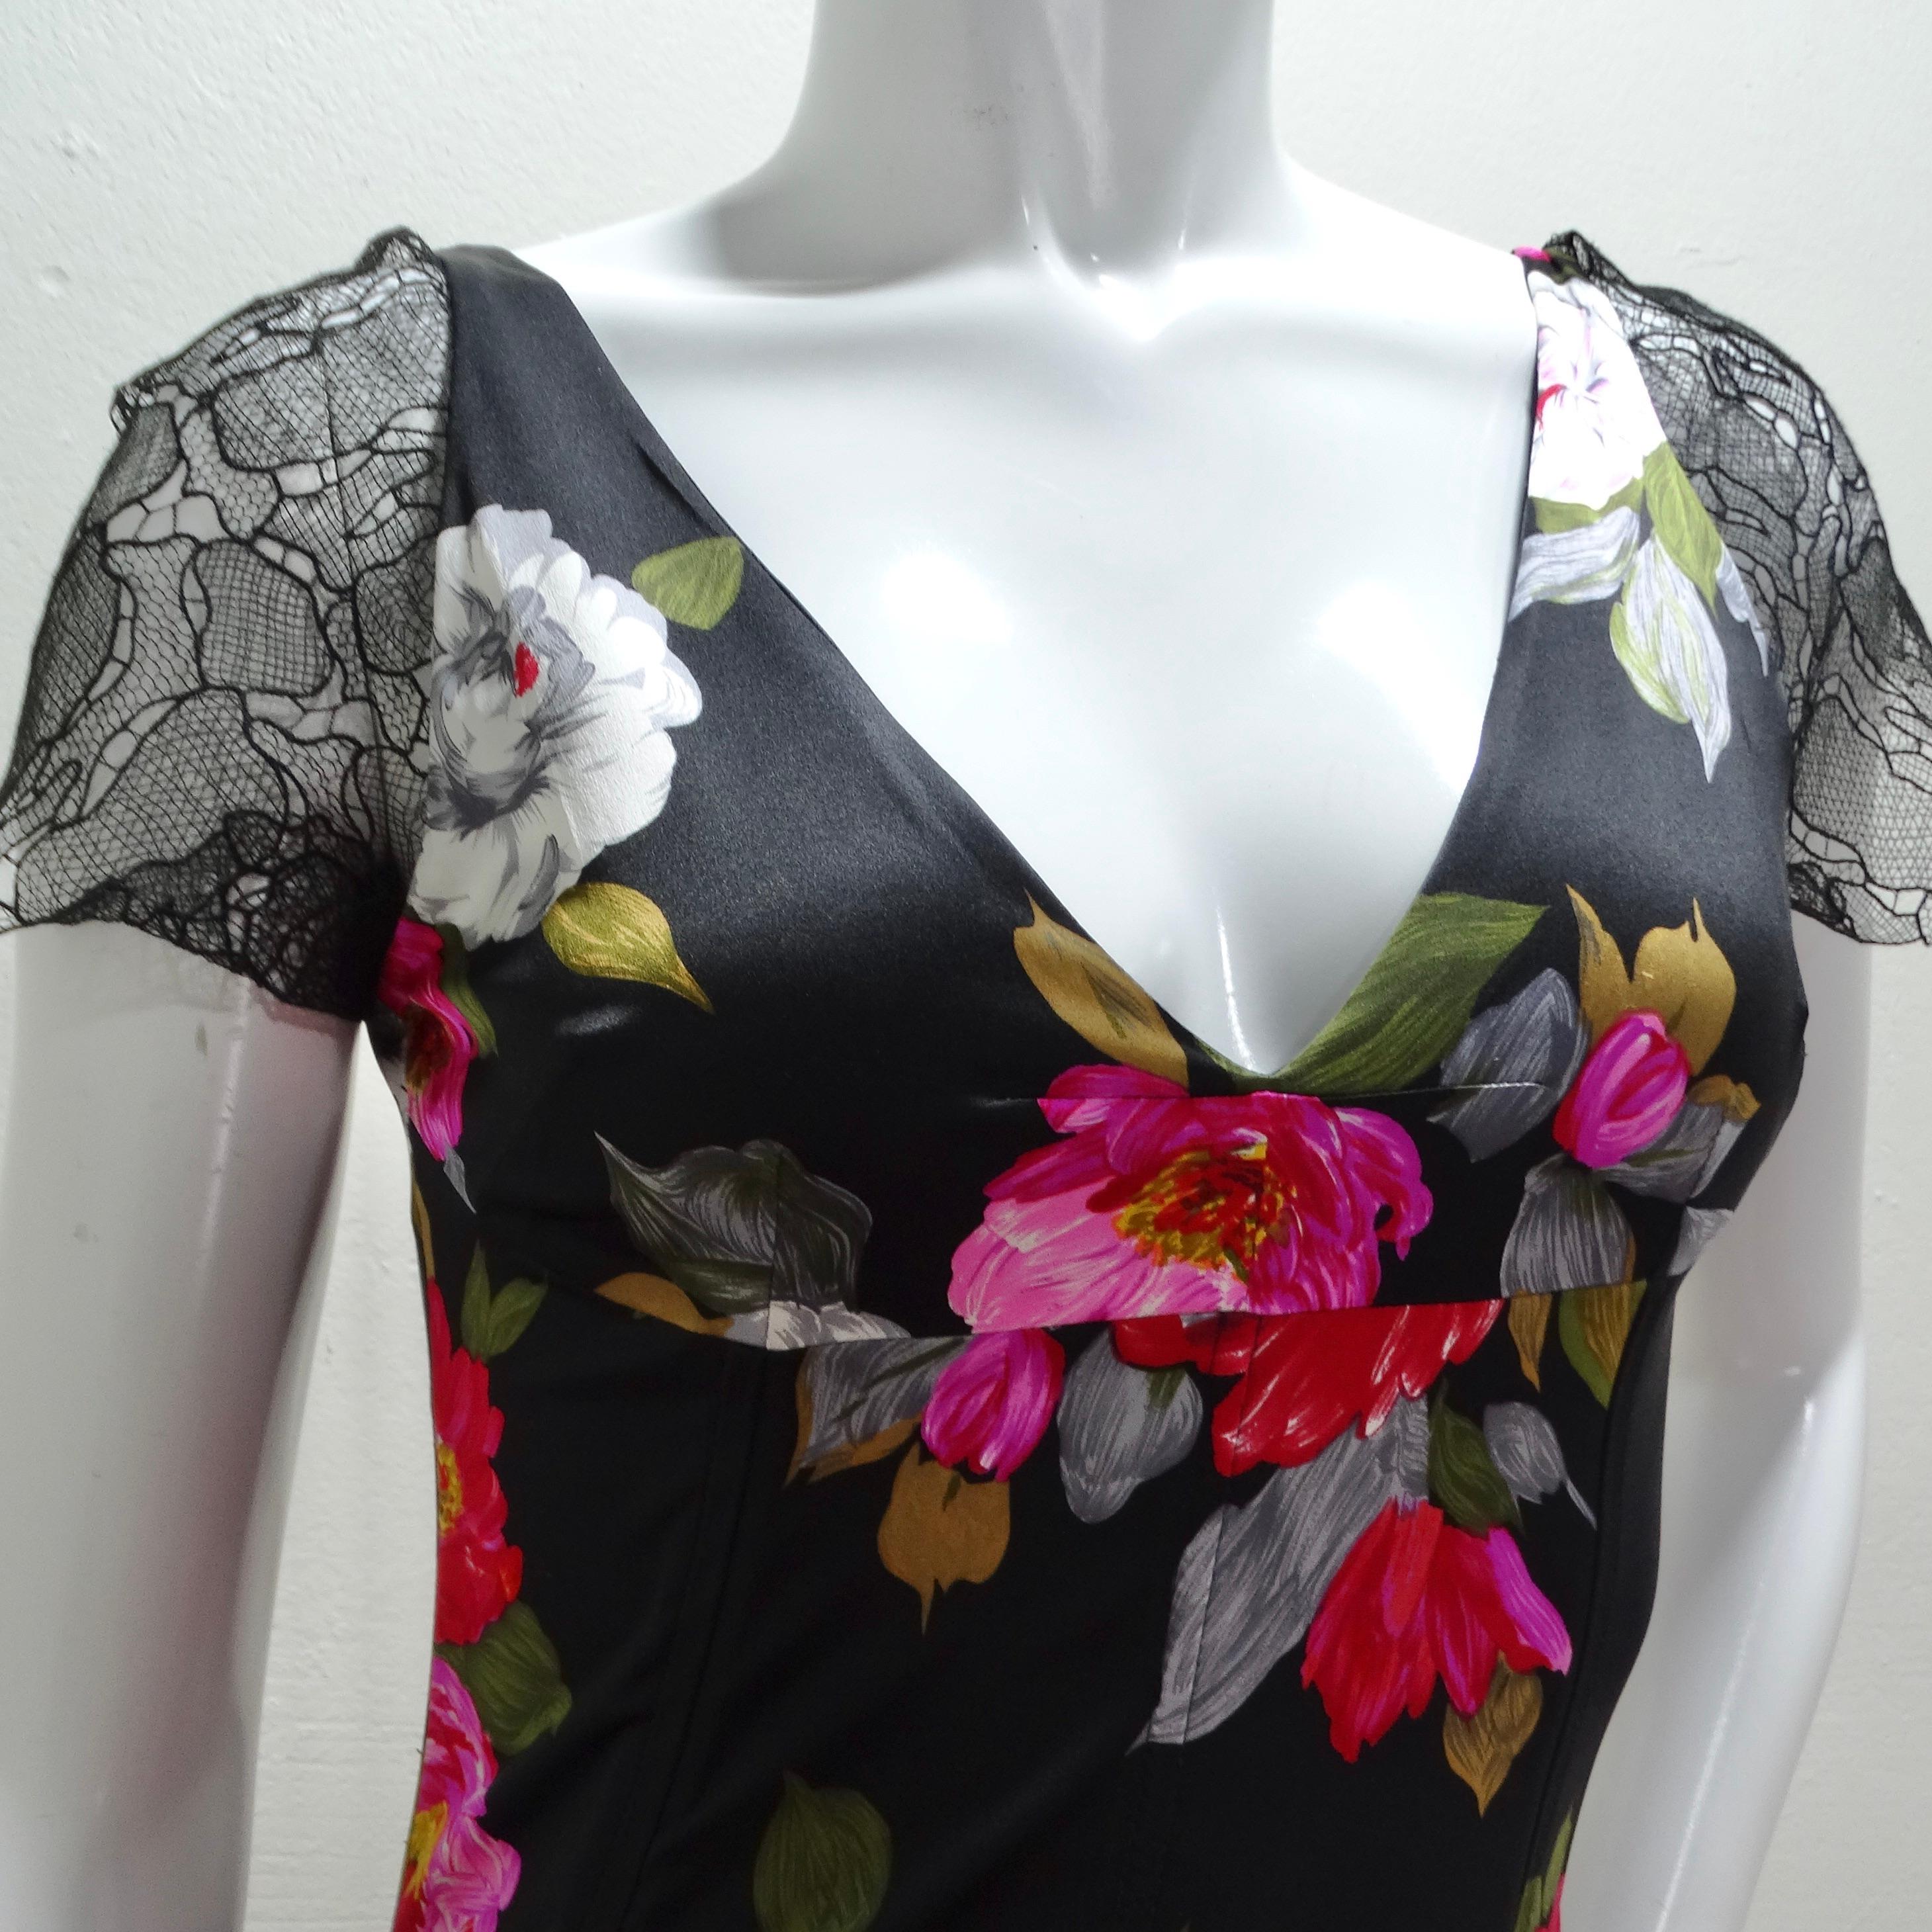 Voici la robe longue en dentelle florale de soie Dolce & Gabbana, une pièce époustouflante et luxueuse qui incarne l'élégance et la féminité intemporelles. Fabrice en soie exquise, cette robe bodycon présente un motif floral fantaisiste dans les